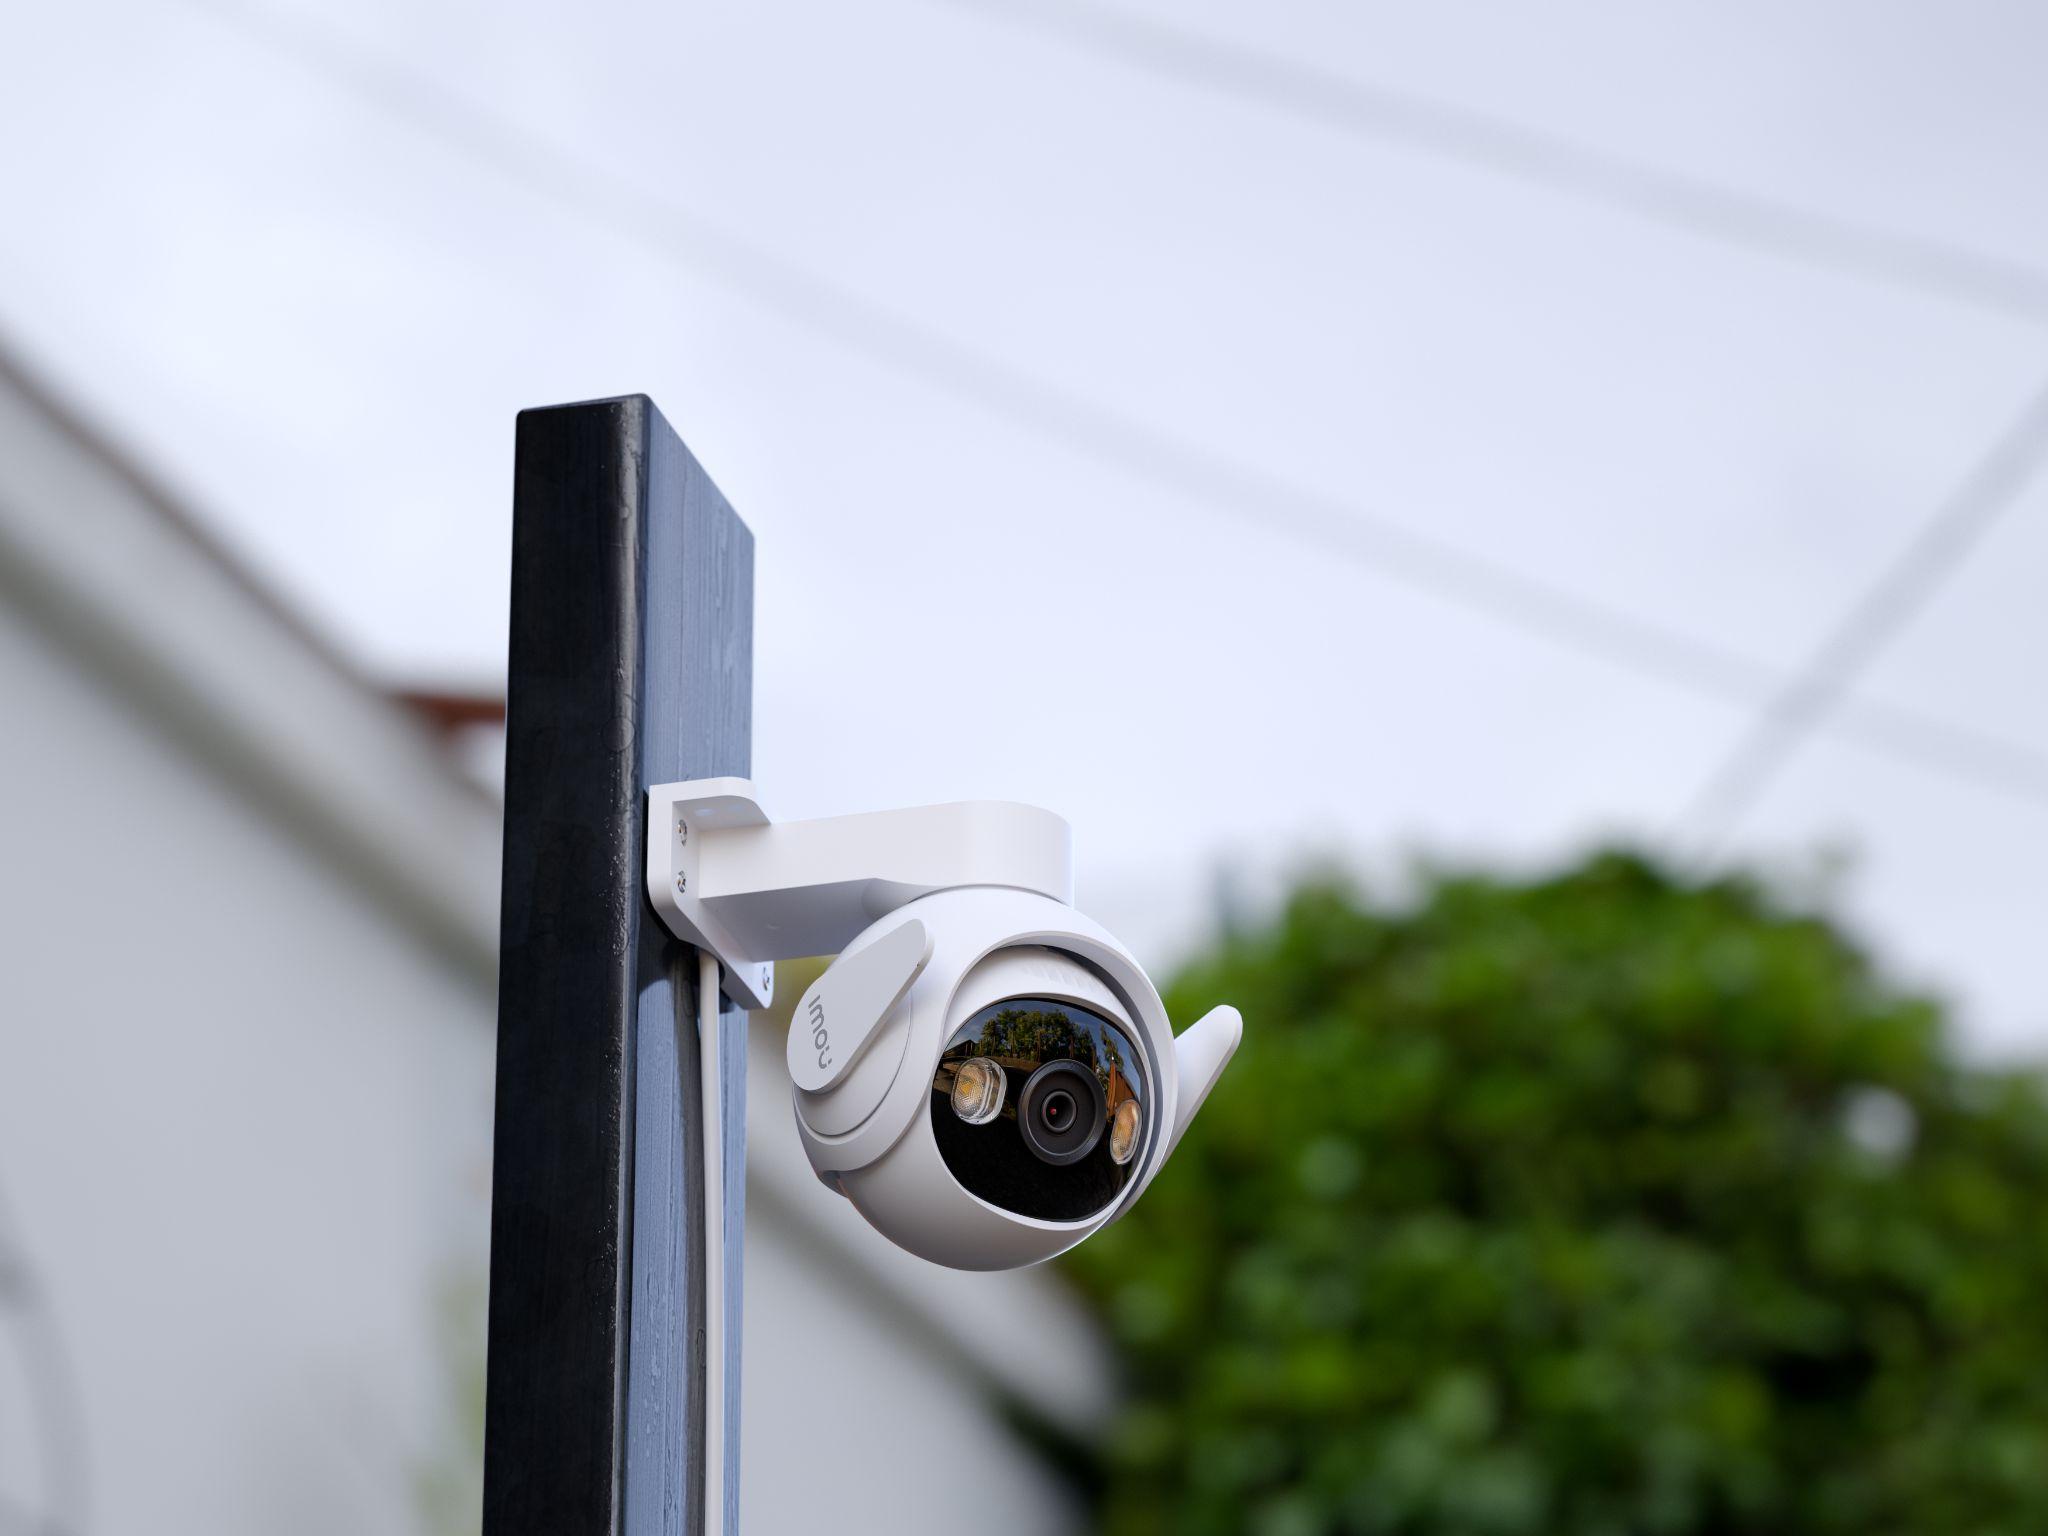 Camera Imou Cruiser 2 là sản phẩm công nghệ tiên tiến đáp ứng tiêu chí giám sát thông minh, an toàn tuyệt đối mà mọi gia đình đang tìm kiếm